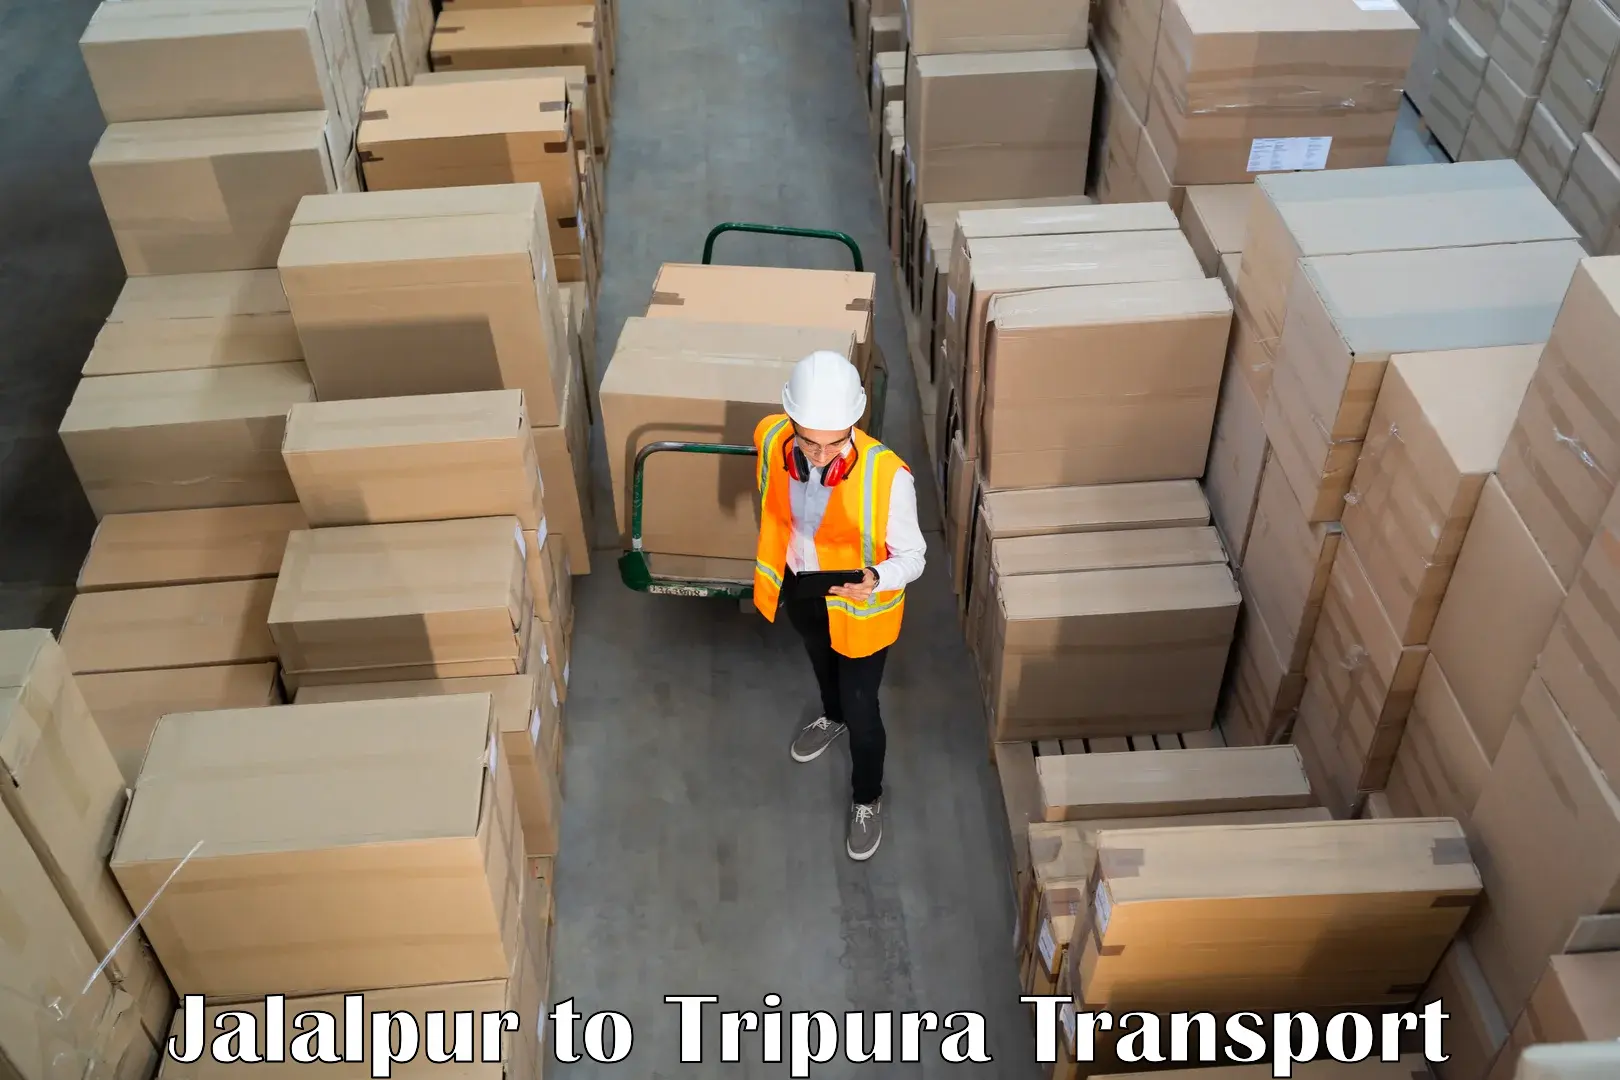 Nearby transport service Jalalpur to Ambassa